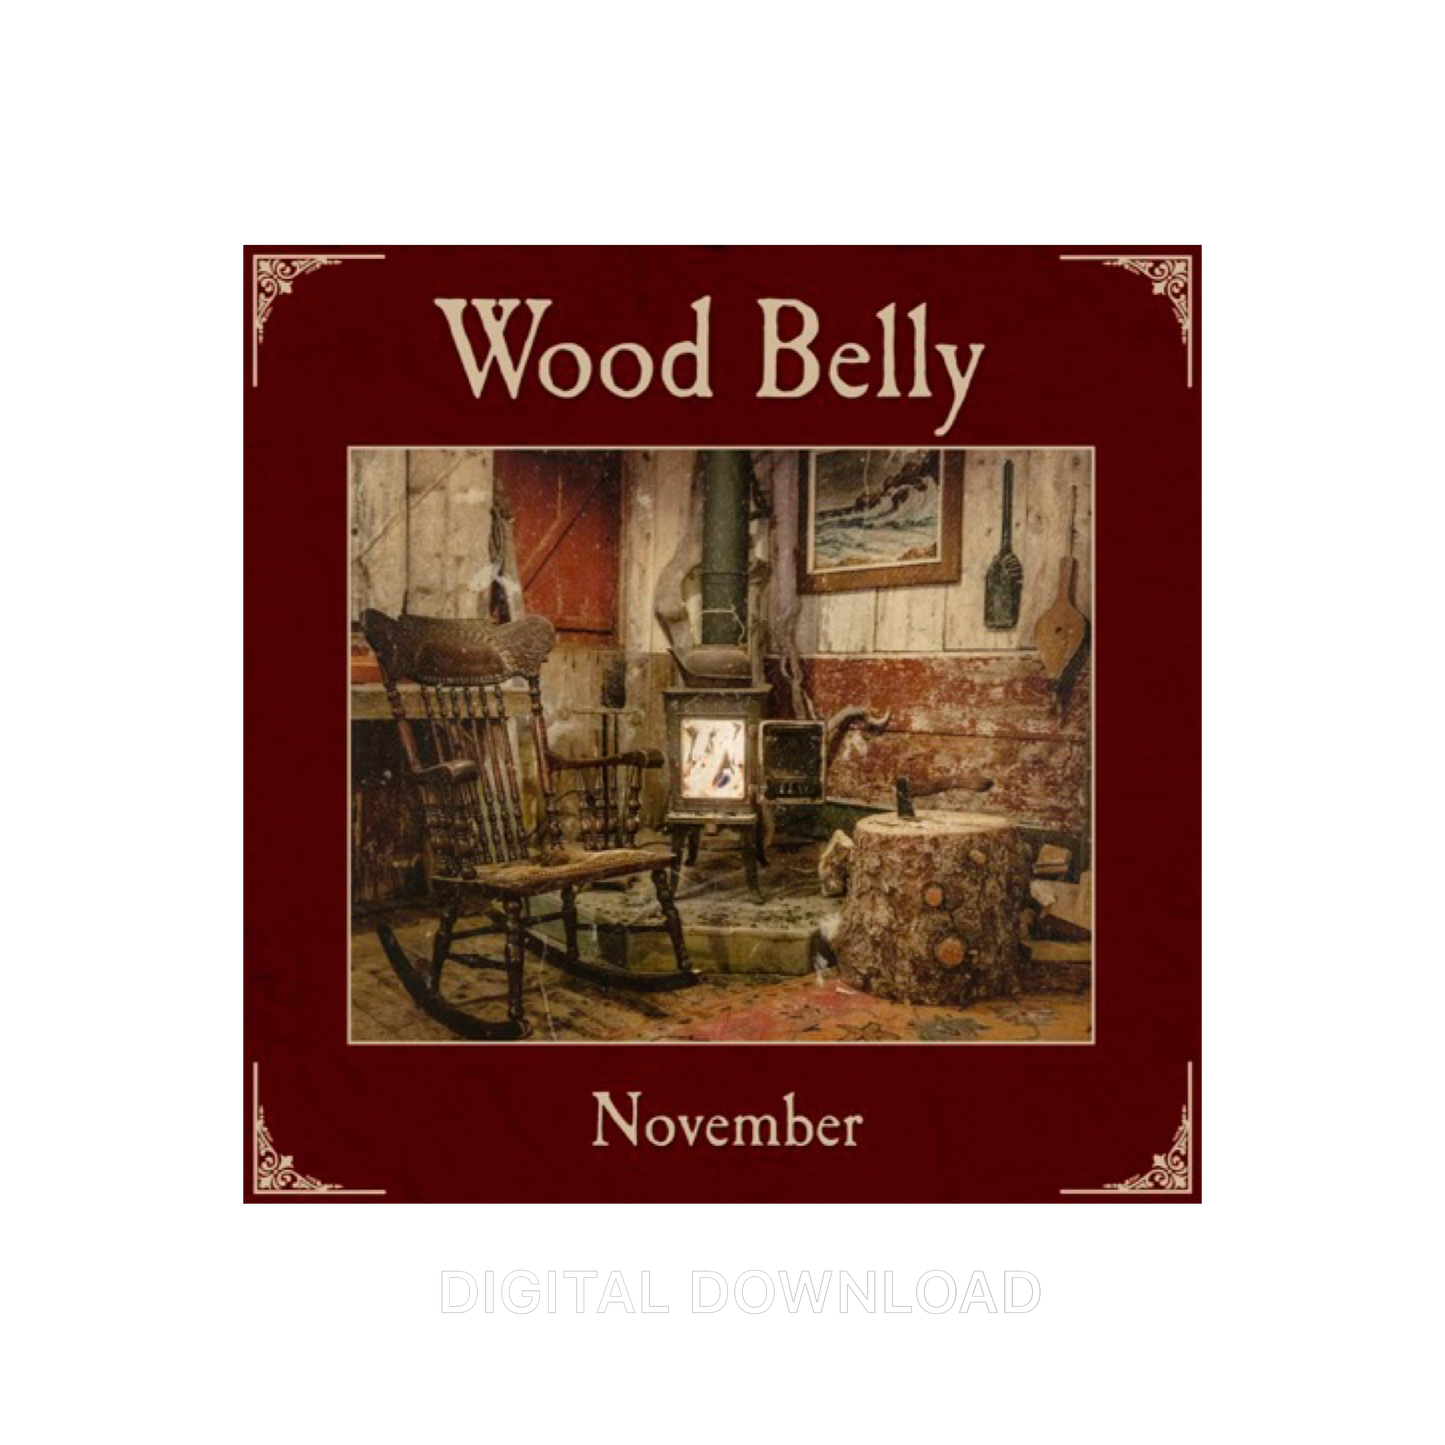 Wood Belly - November Digital Download